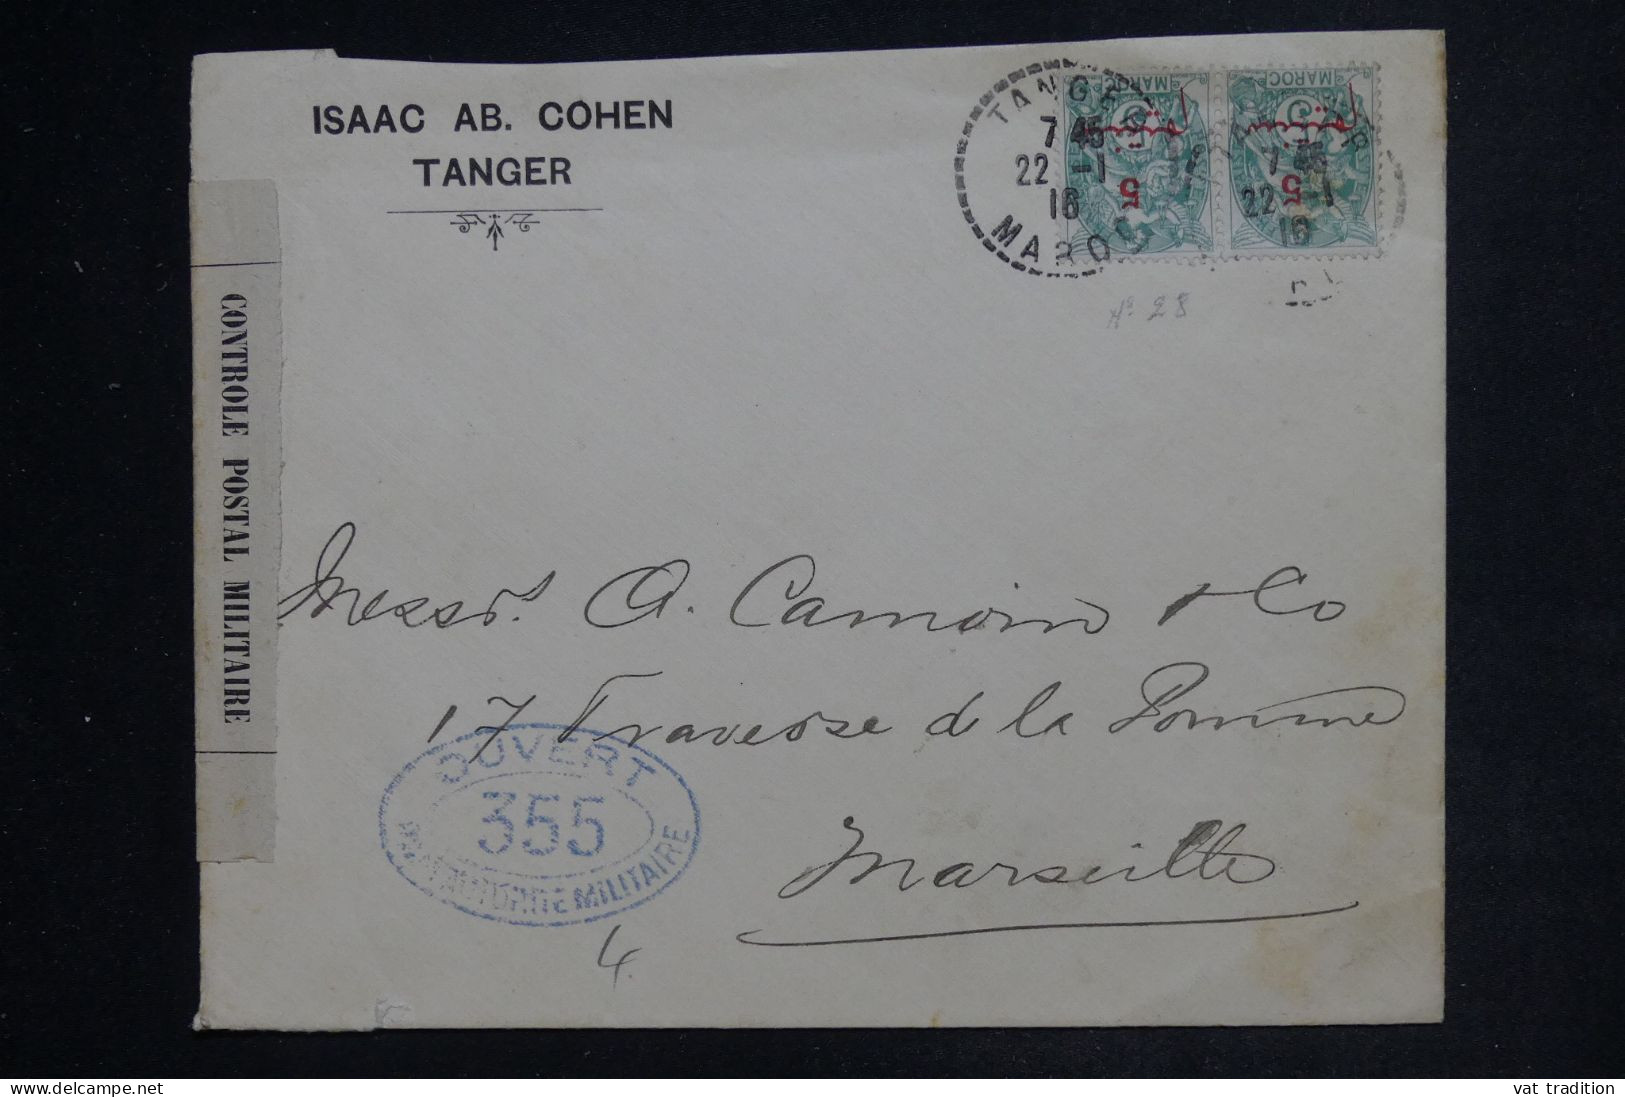 MAROC - Enveloppe Commerciale De Tanger Pour Marseille En 1916 Avec Contrôle Postal - L 152472 - Covers & Documents